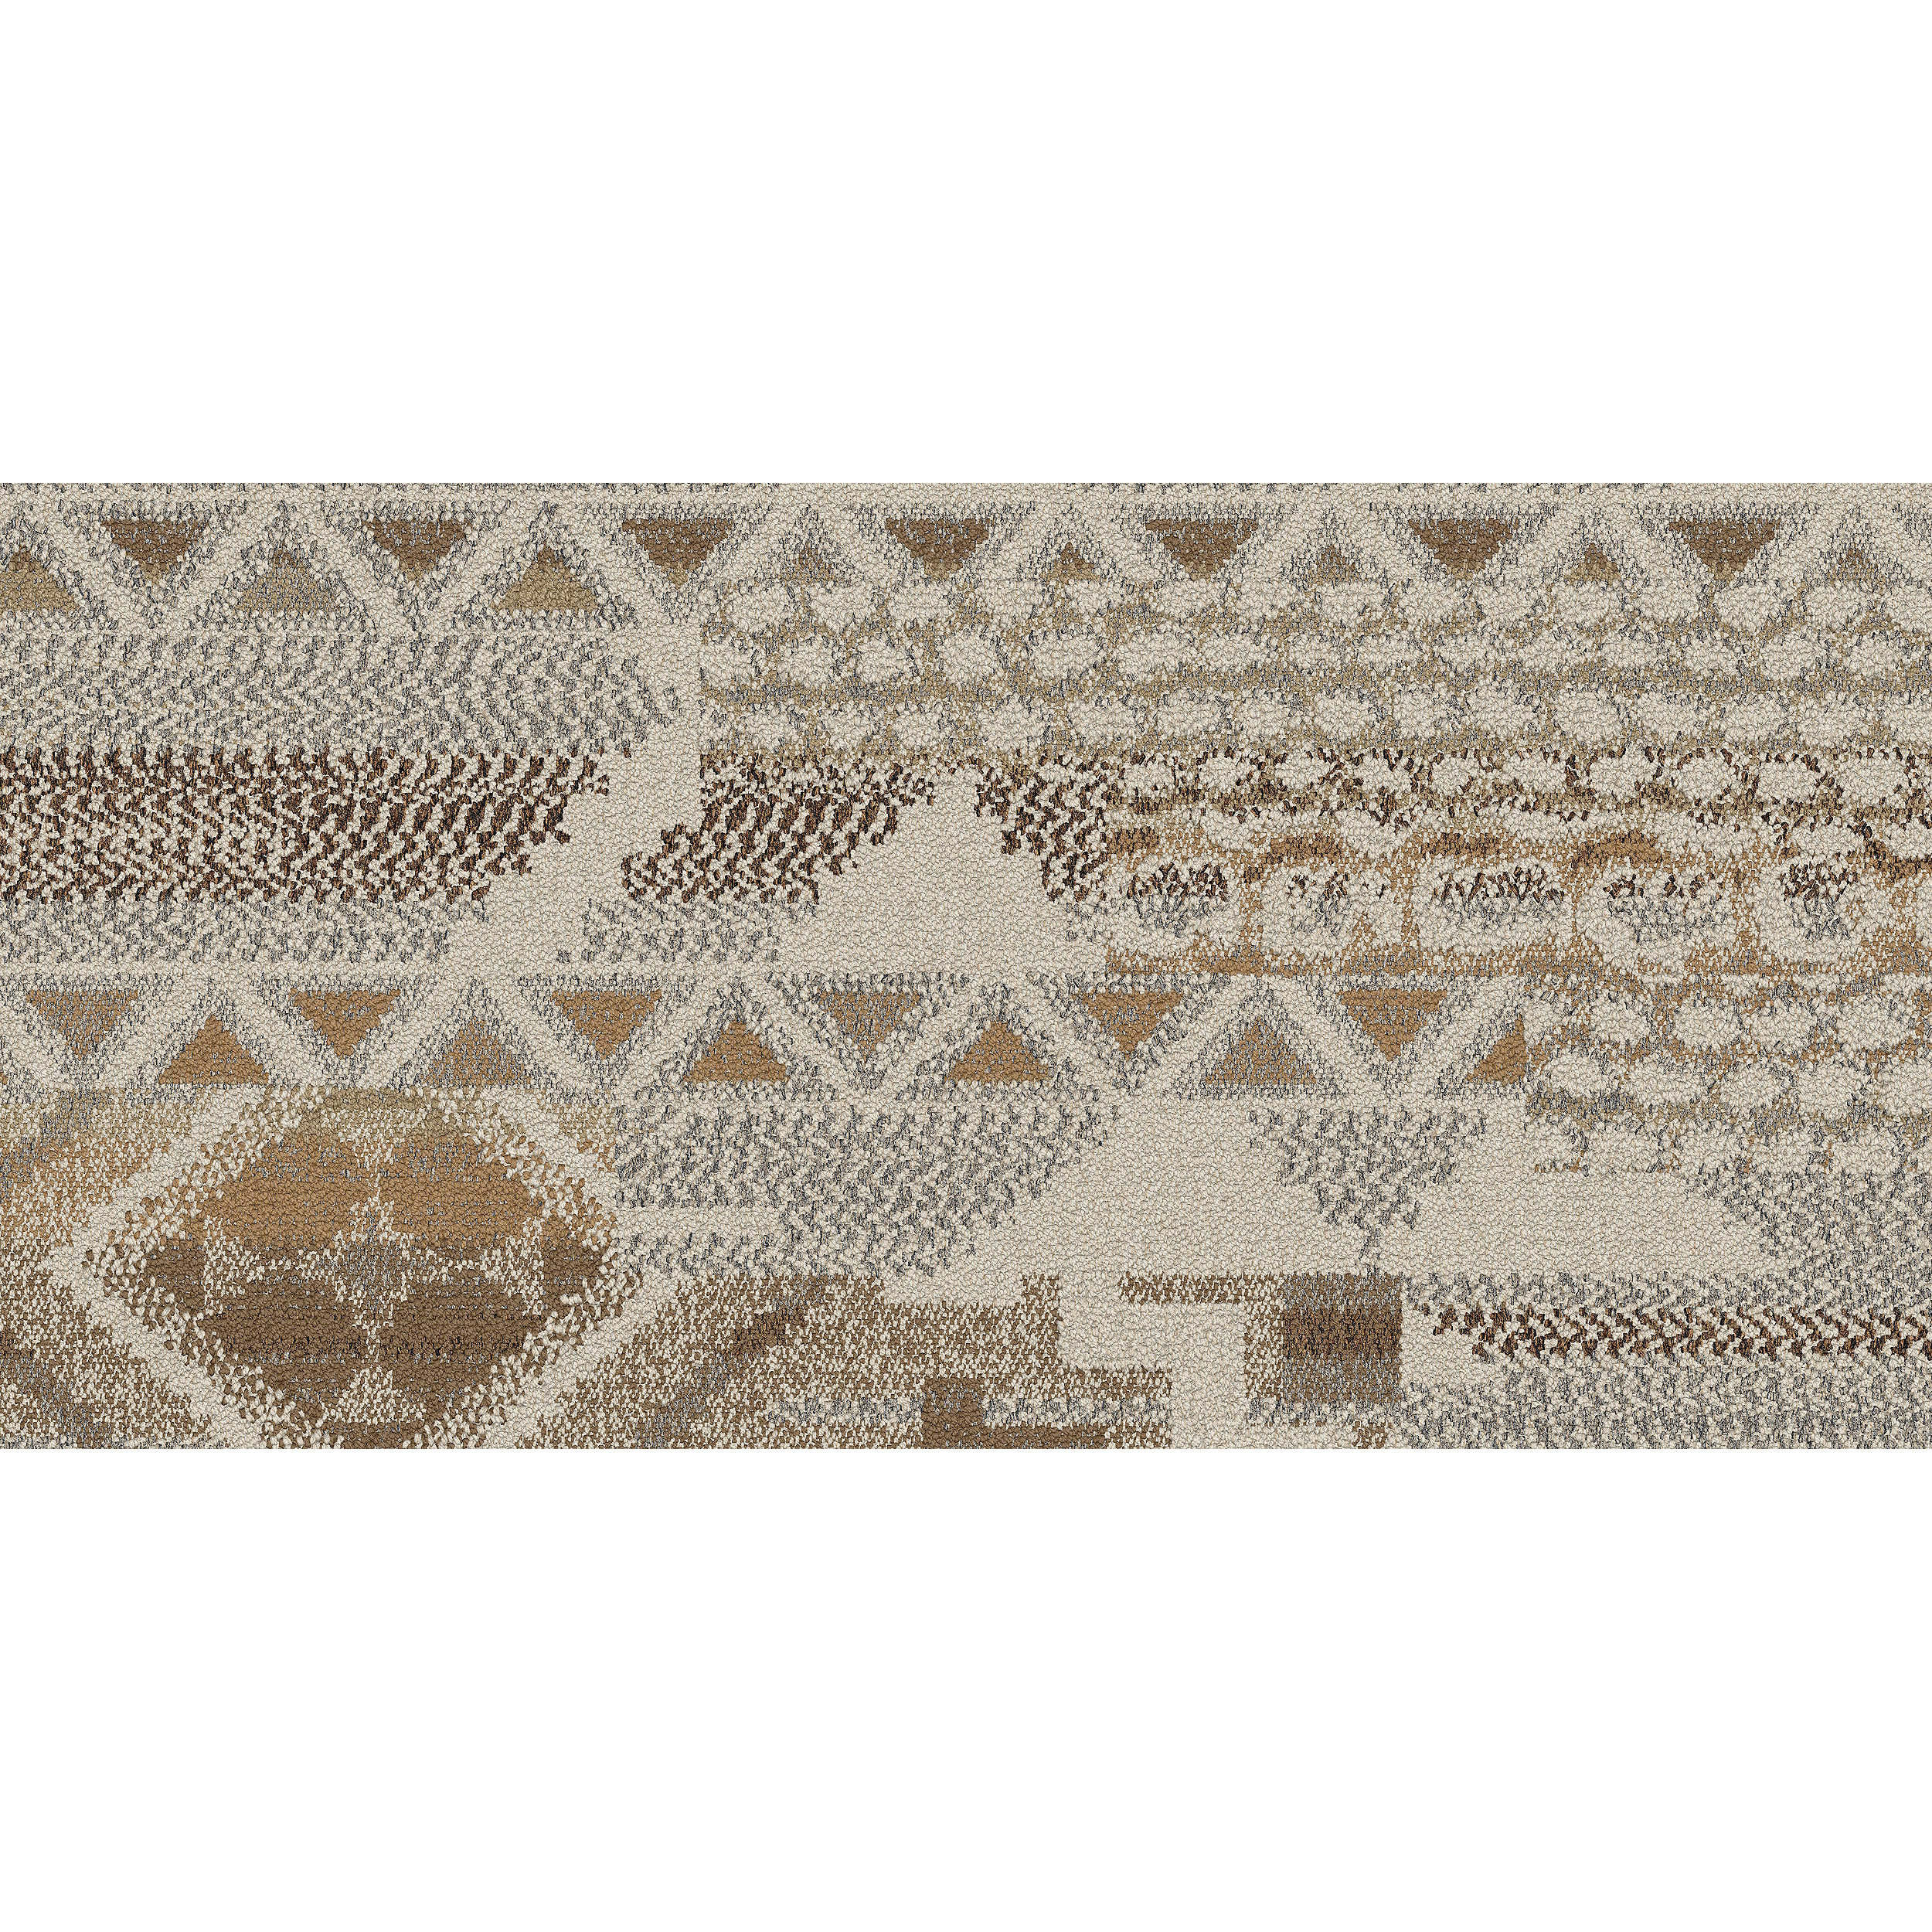 Desert Ranch Carpet Tile in Sandstone image number 10